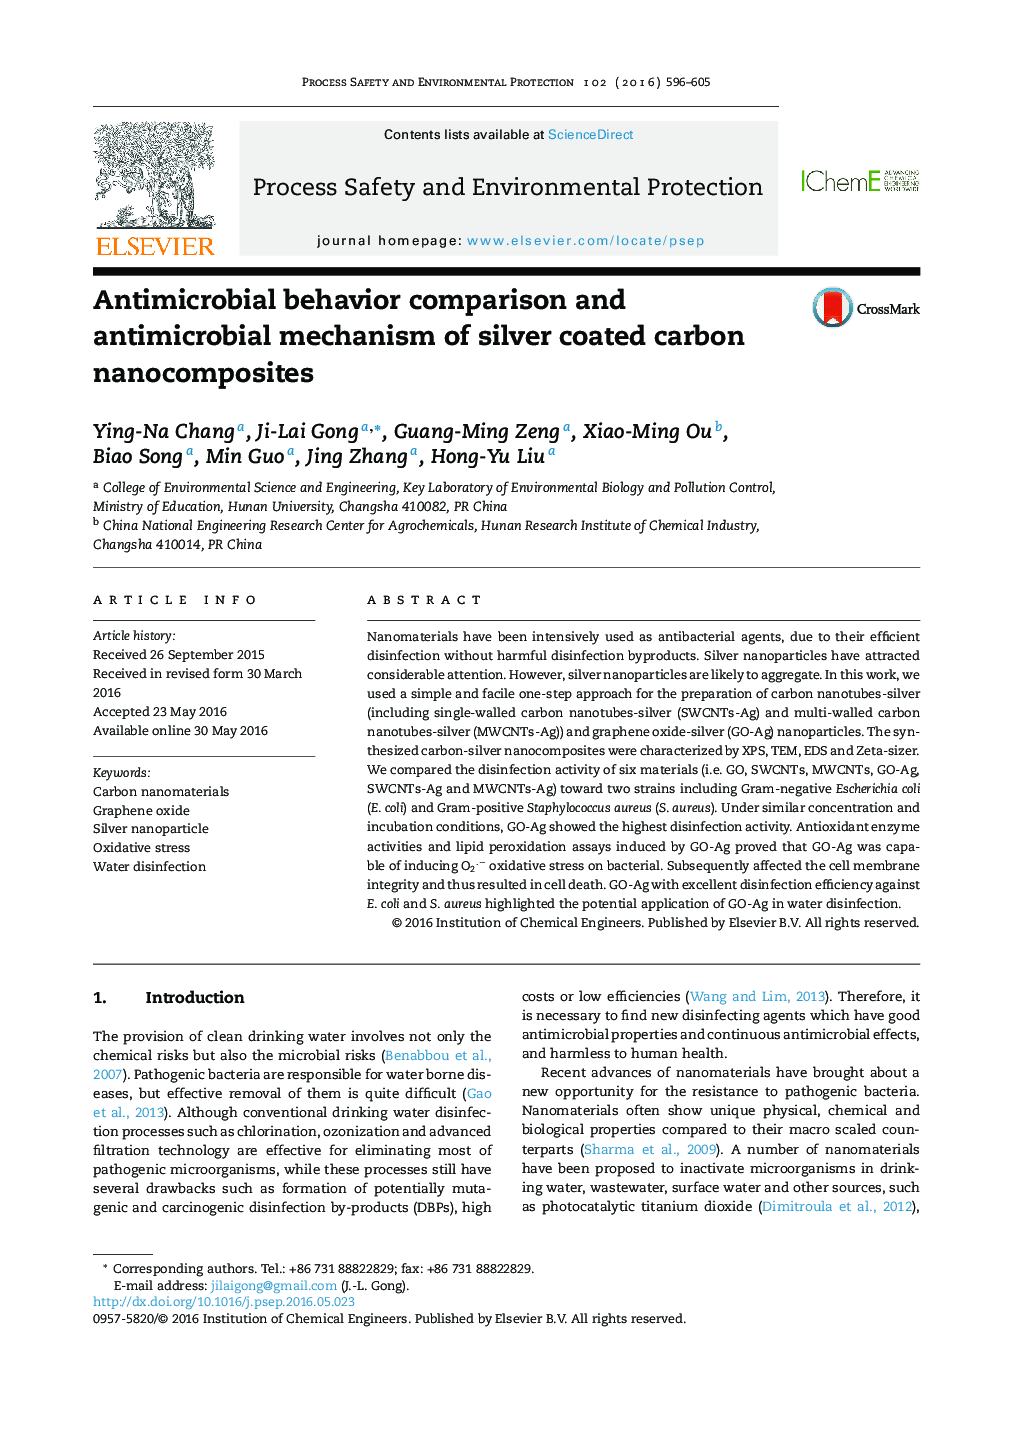 مقایسه رفتار ضد میکروبی و مکانیسم ضدمیکروبی نانوکامپوزیت های کربن با روکش نقره 